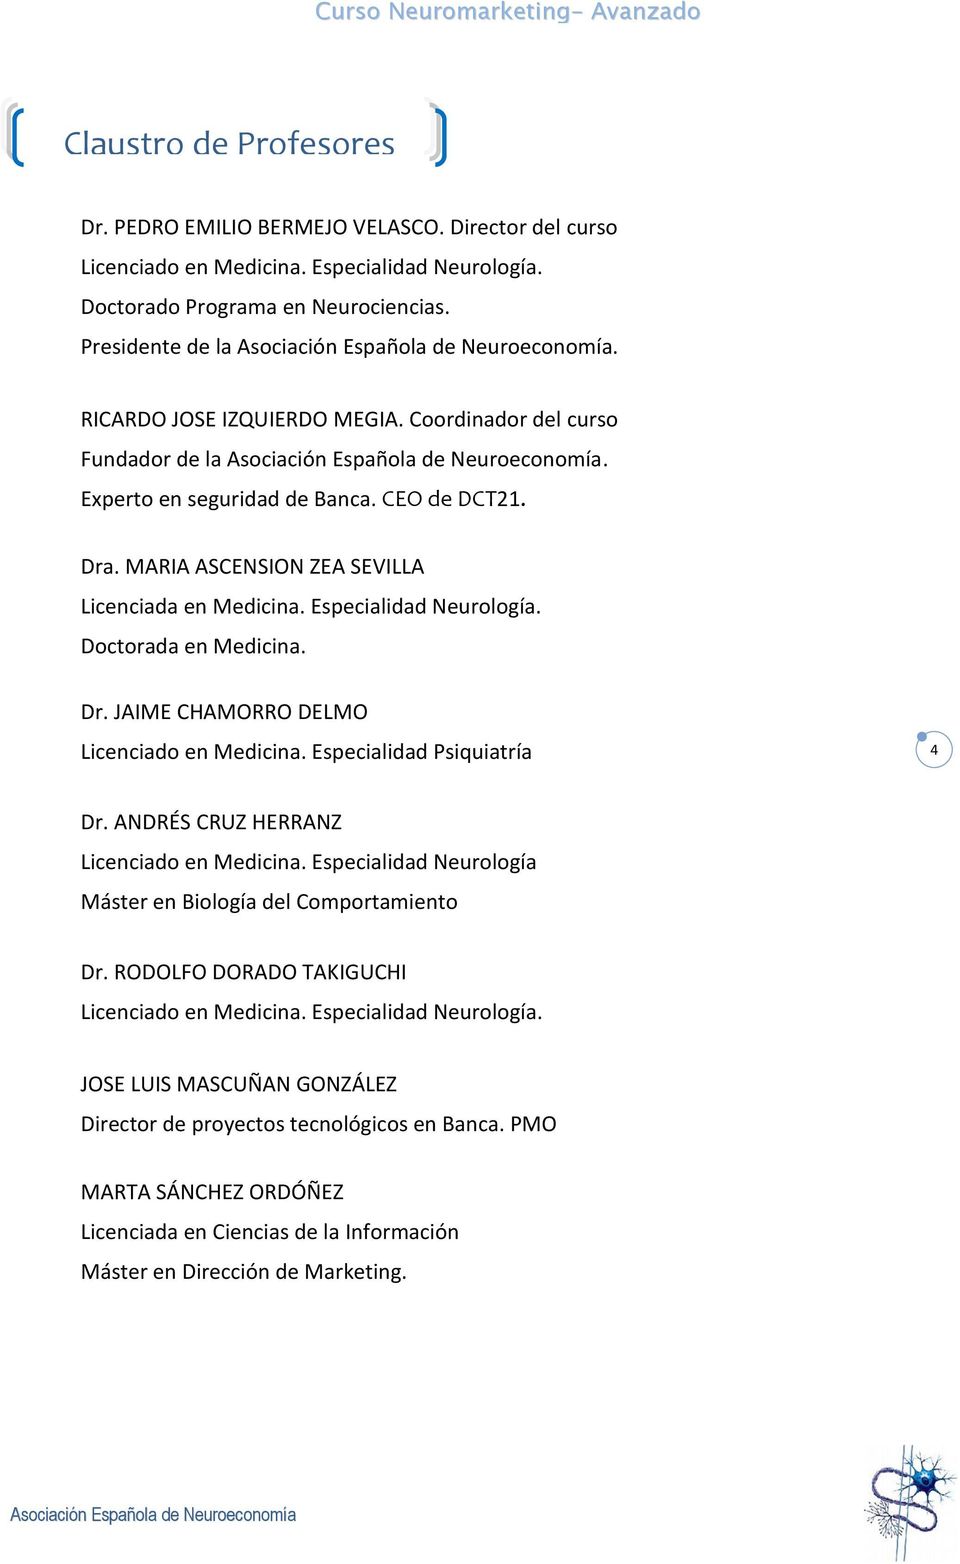 Doctorada en Medicina. Dr. JAIME CHAMORRO DELMO Licenciado en Medicina. Especialidad Psiquiatría 4 Dr. ANDRÉS CRUZ HERRANZ Licenciado en Medicina.